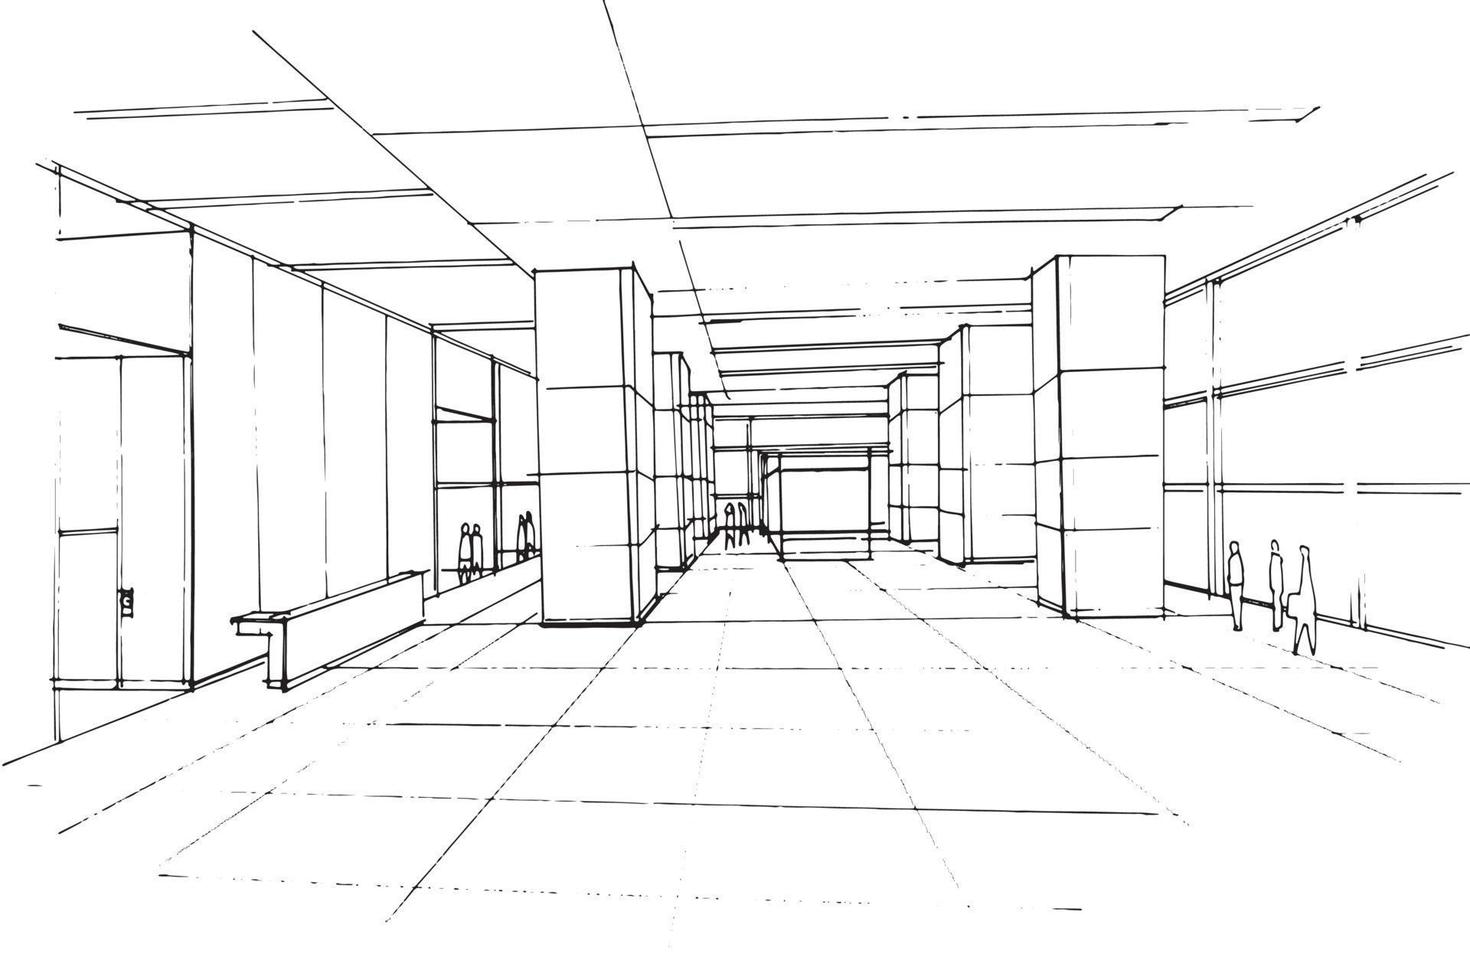 Dessin d'esquisse du bureau du hall Zone de la salle de réception du bureau Design moderne Image vectorielle Illustration 2d vecteur